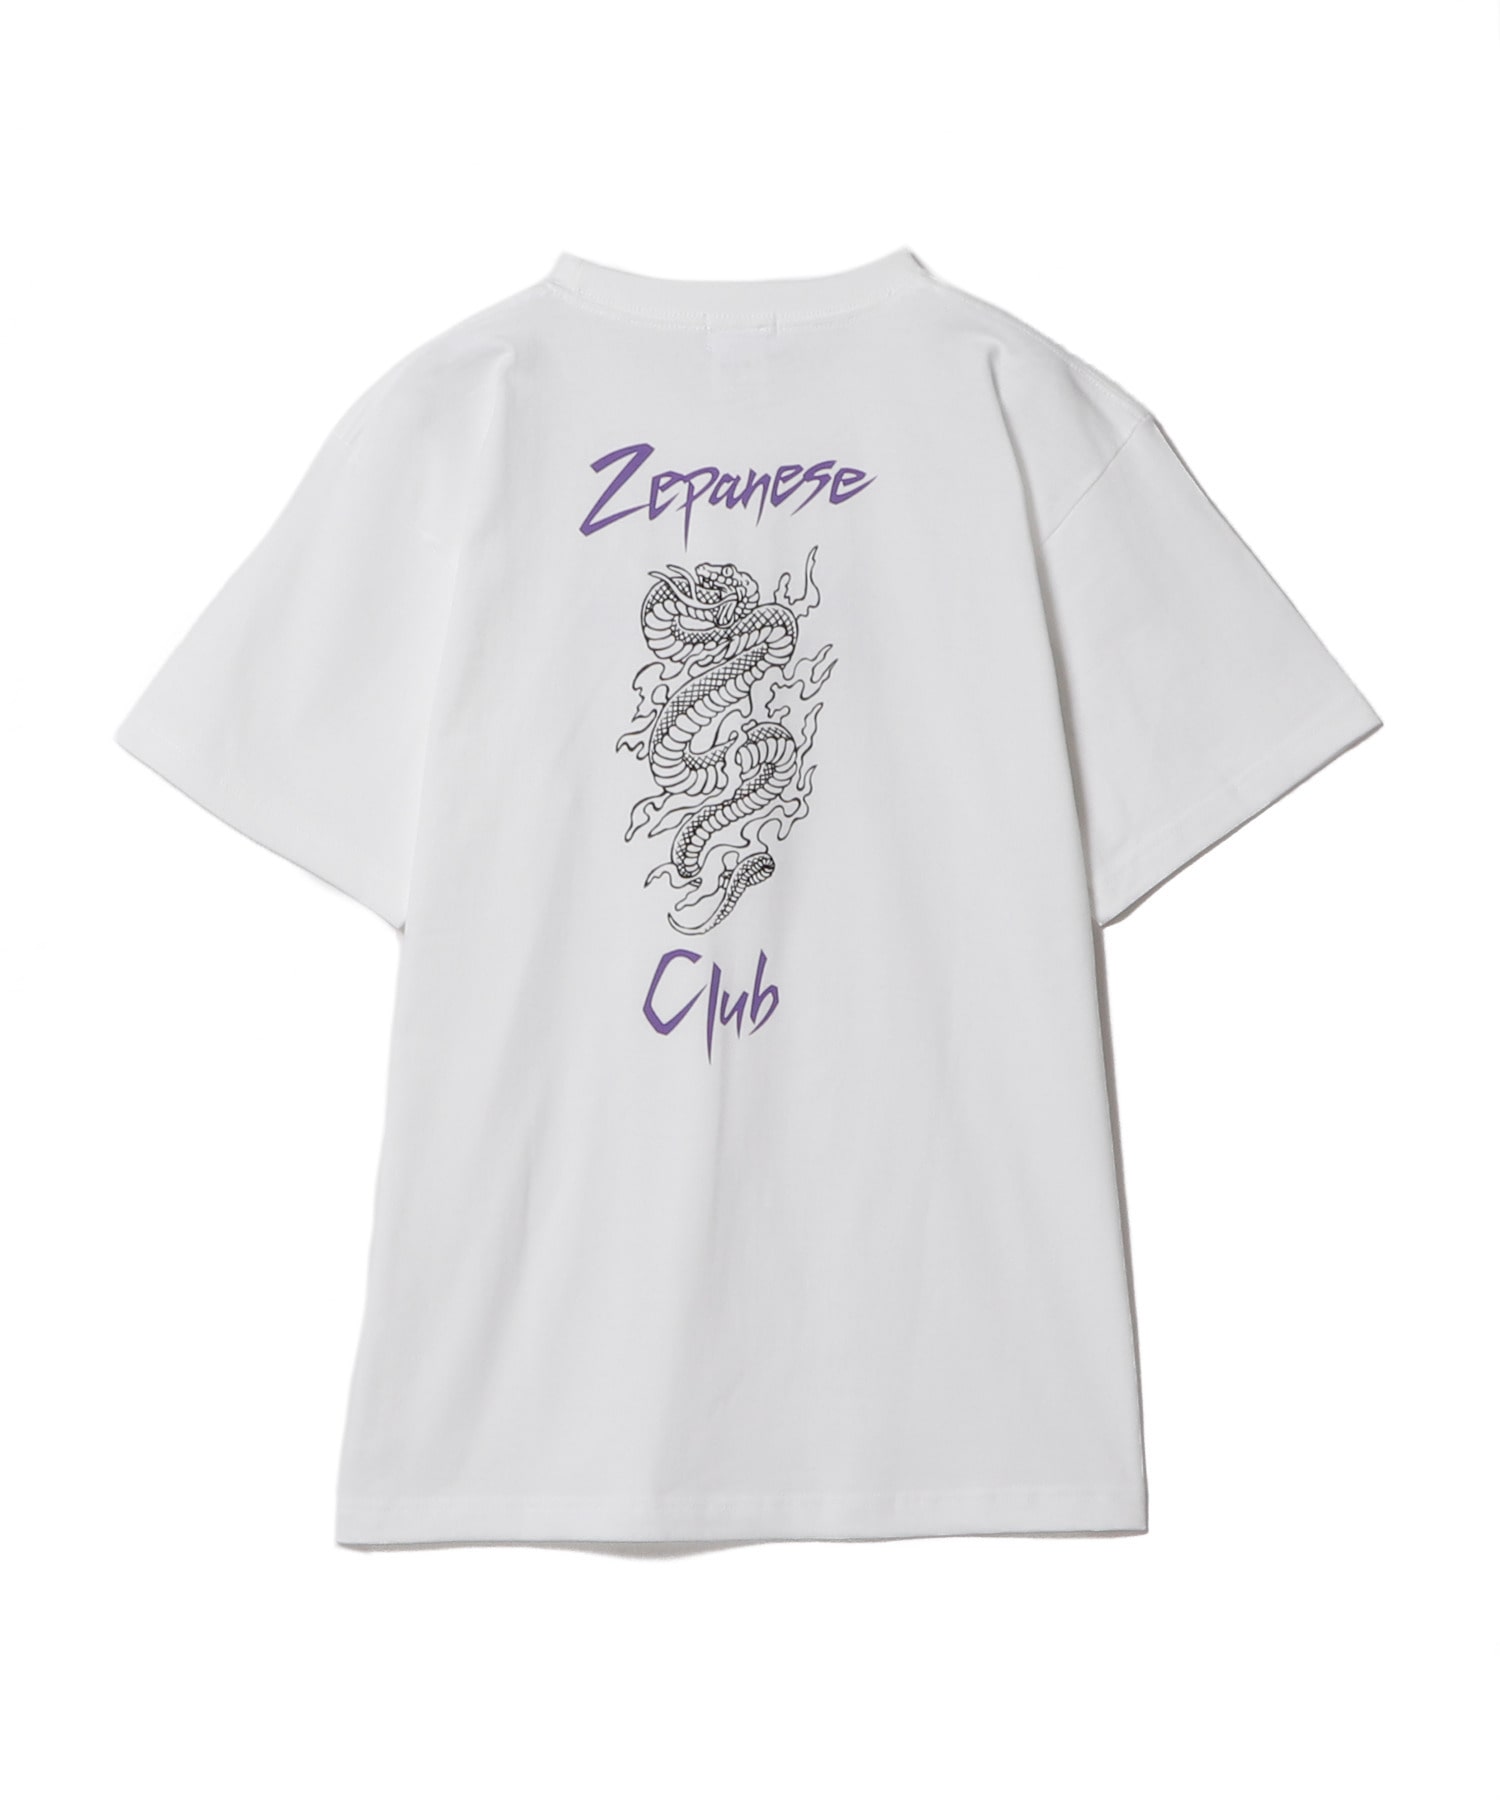 【限定】zepanese club  Tシャツ 黒